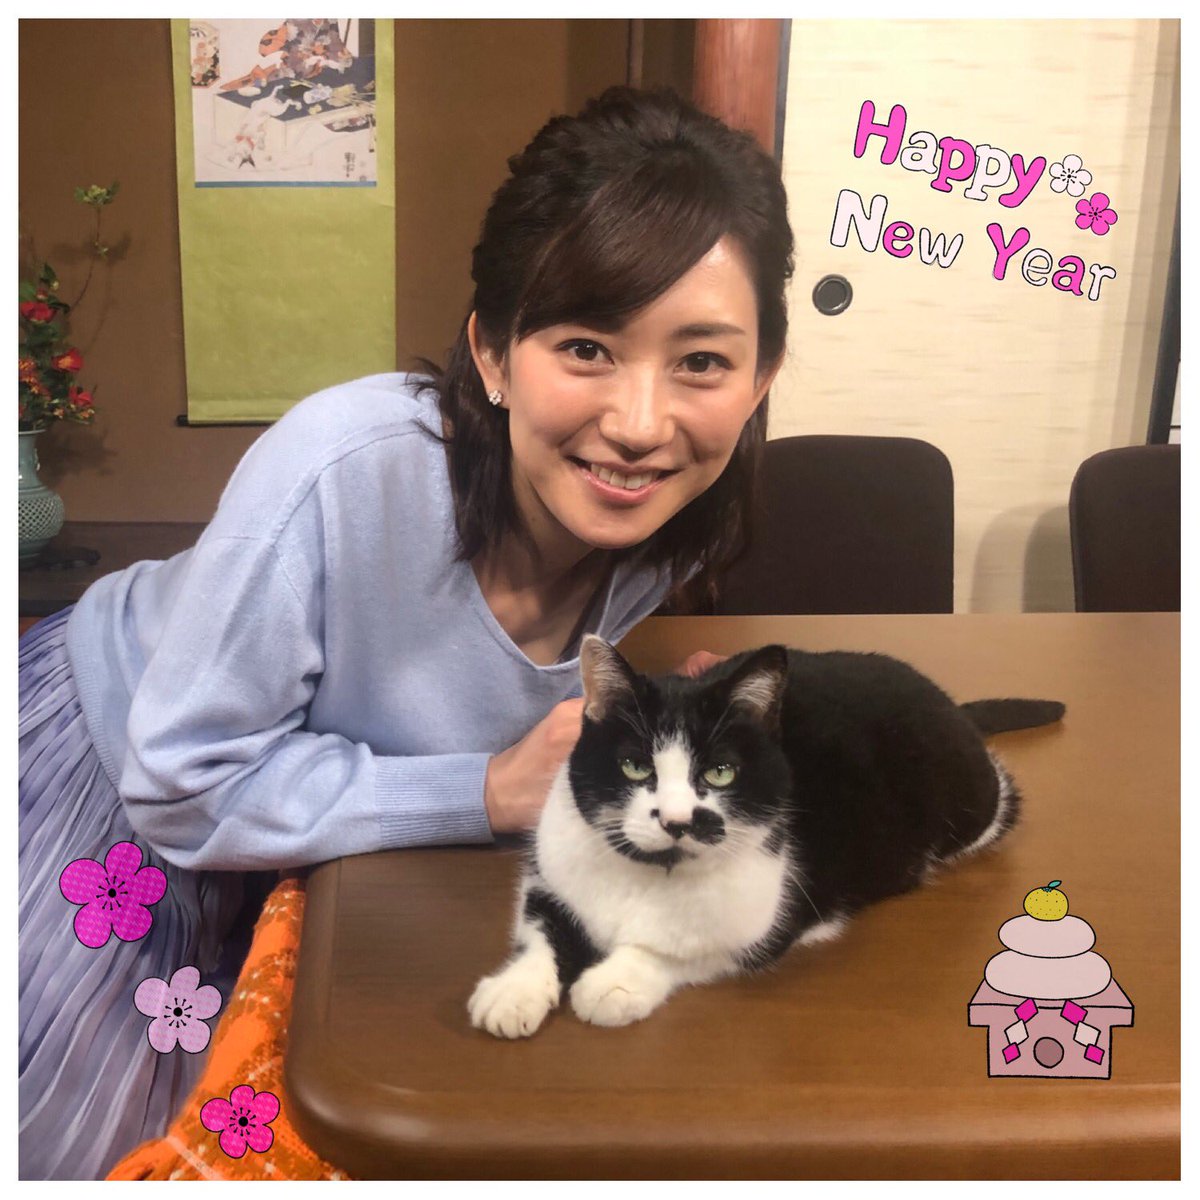 佐々木瞳 Hitomi Sasaki Twitter वर Nhk Eテレ 趣味どきっ 不思議な猫世界 19 年最初の放送です 明日1月7日 月 午後9時30分 Nhk Eテレ 趣味どきっ の 不思議な猫世界 第5回が放送されます 私は Mc として出演中です 第5回は 武将と